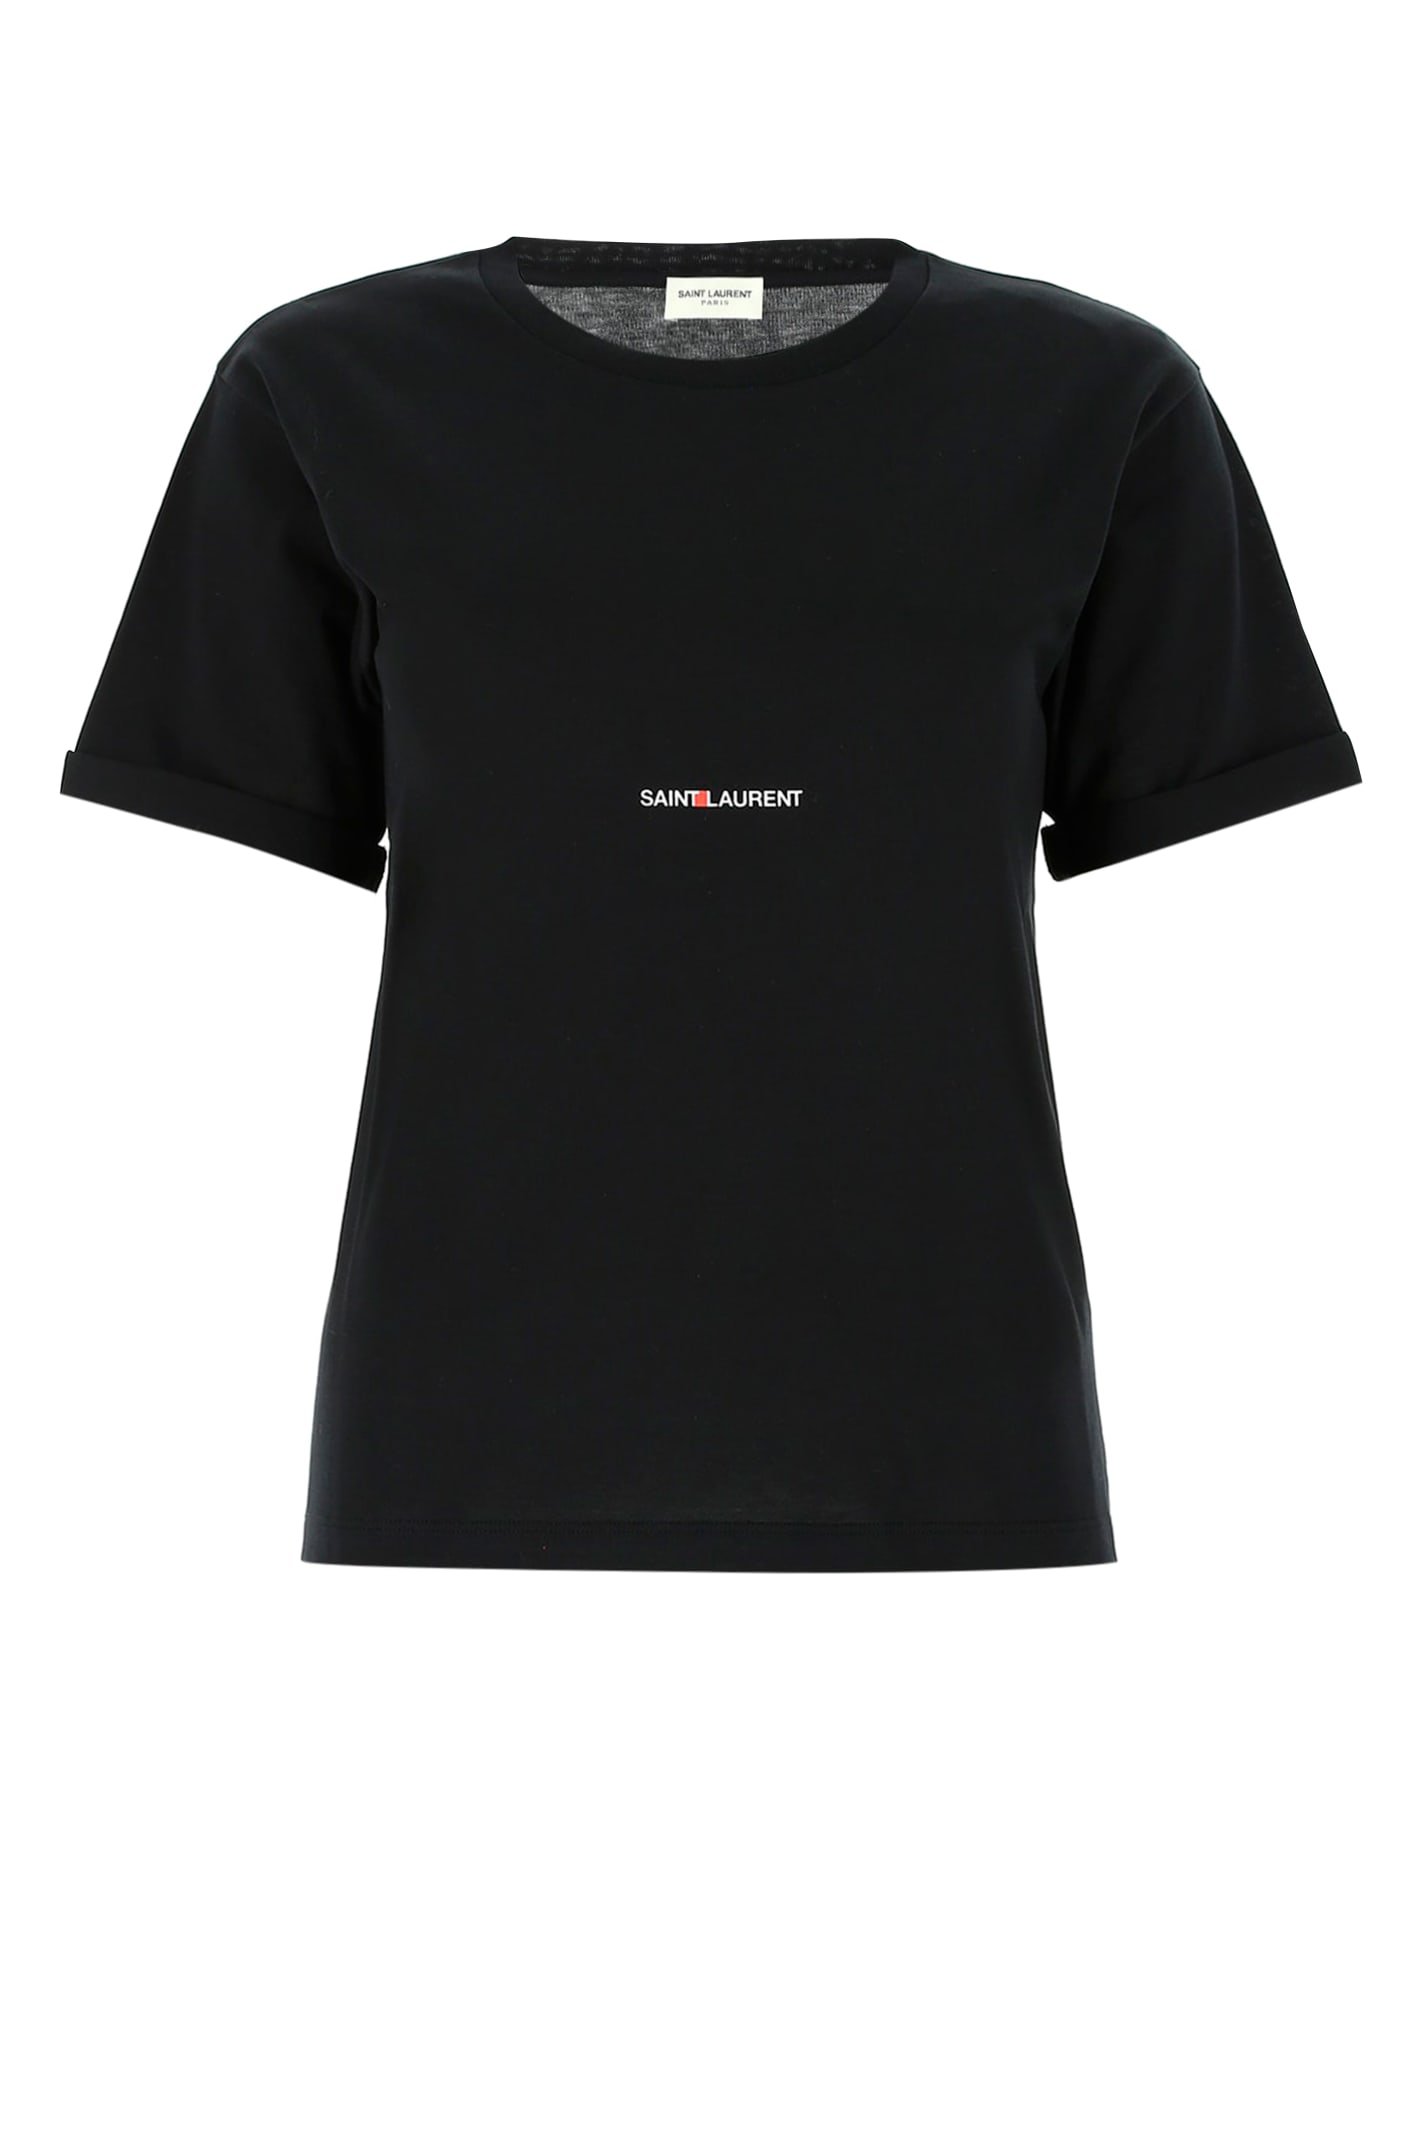 Saint Laurent Black Cotton T-shirt In Burgundy